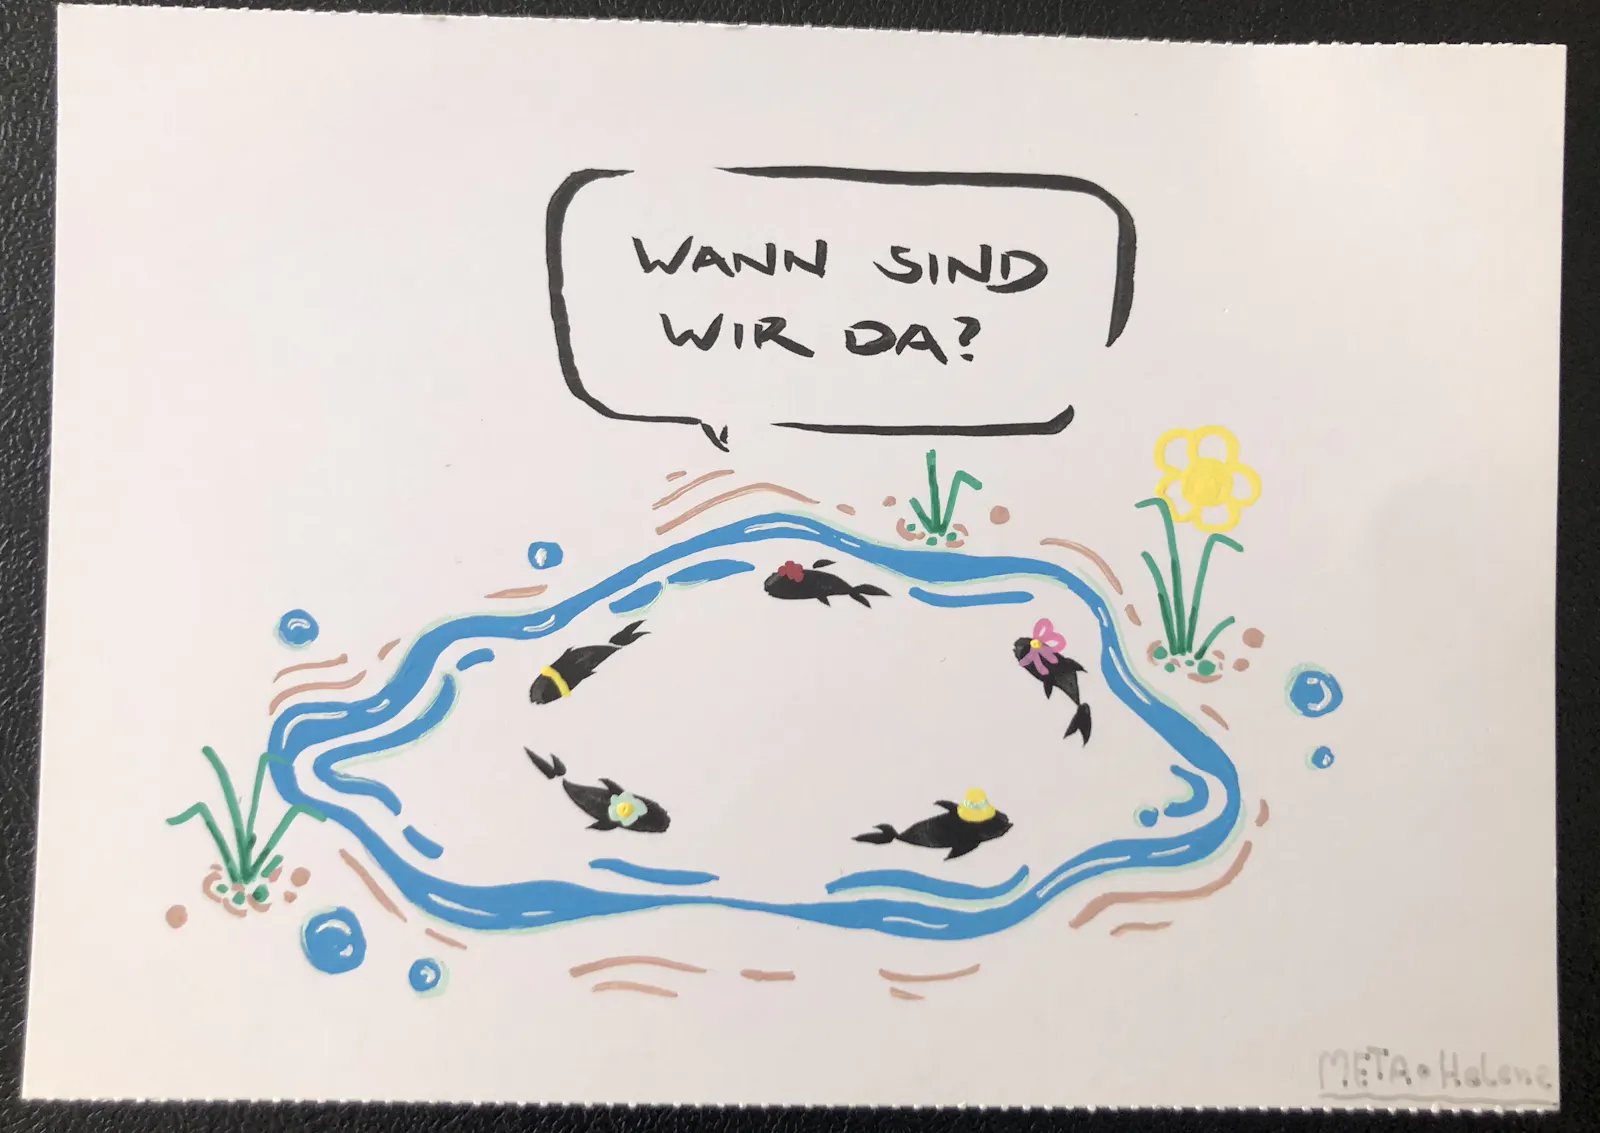 Postkarte mit META BENE-Motive, das farbig bearbeitet wurde. Drei Fische schwimmen im Kreis. einer fragt, "Wann sind wir da?"